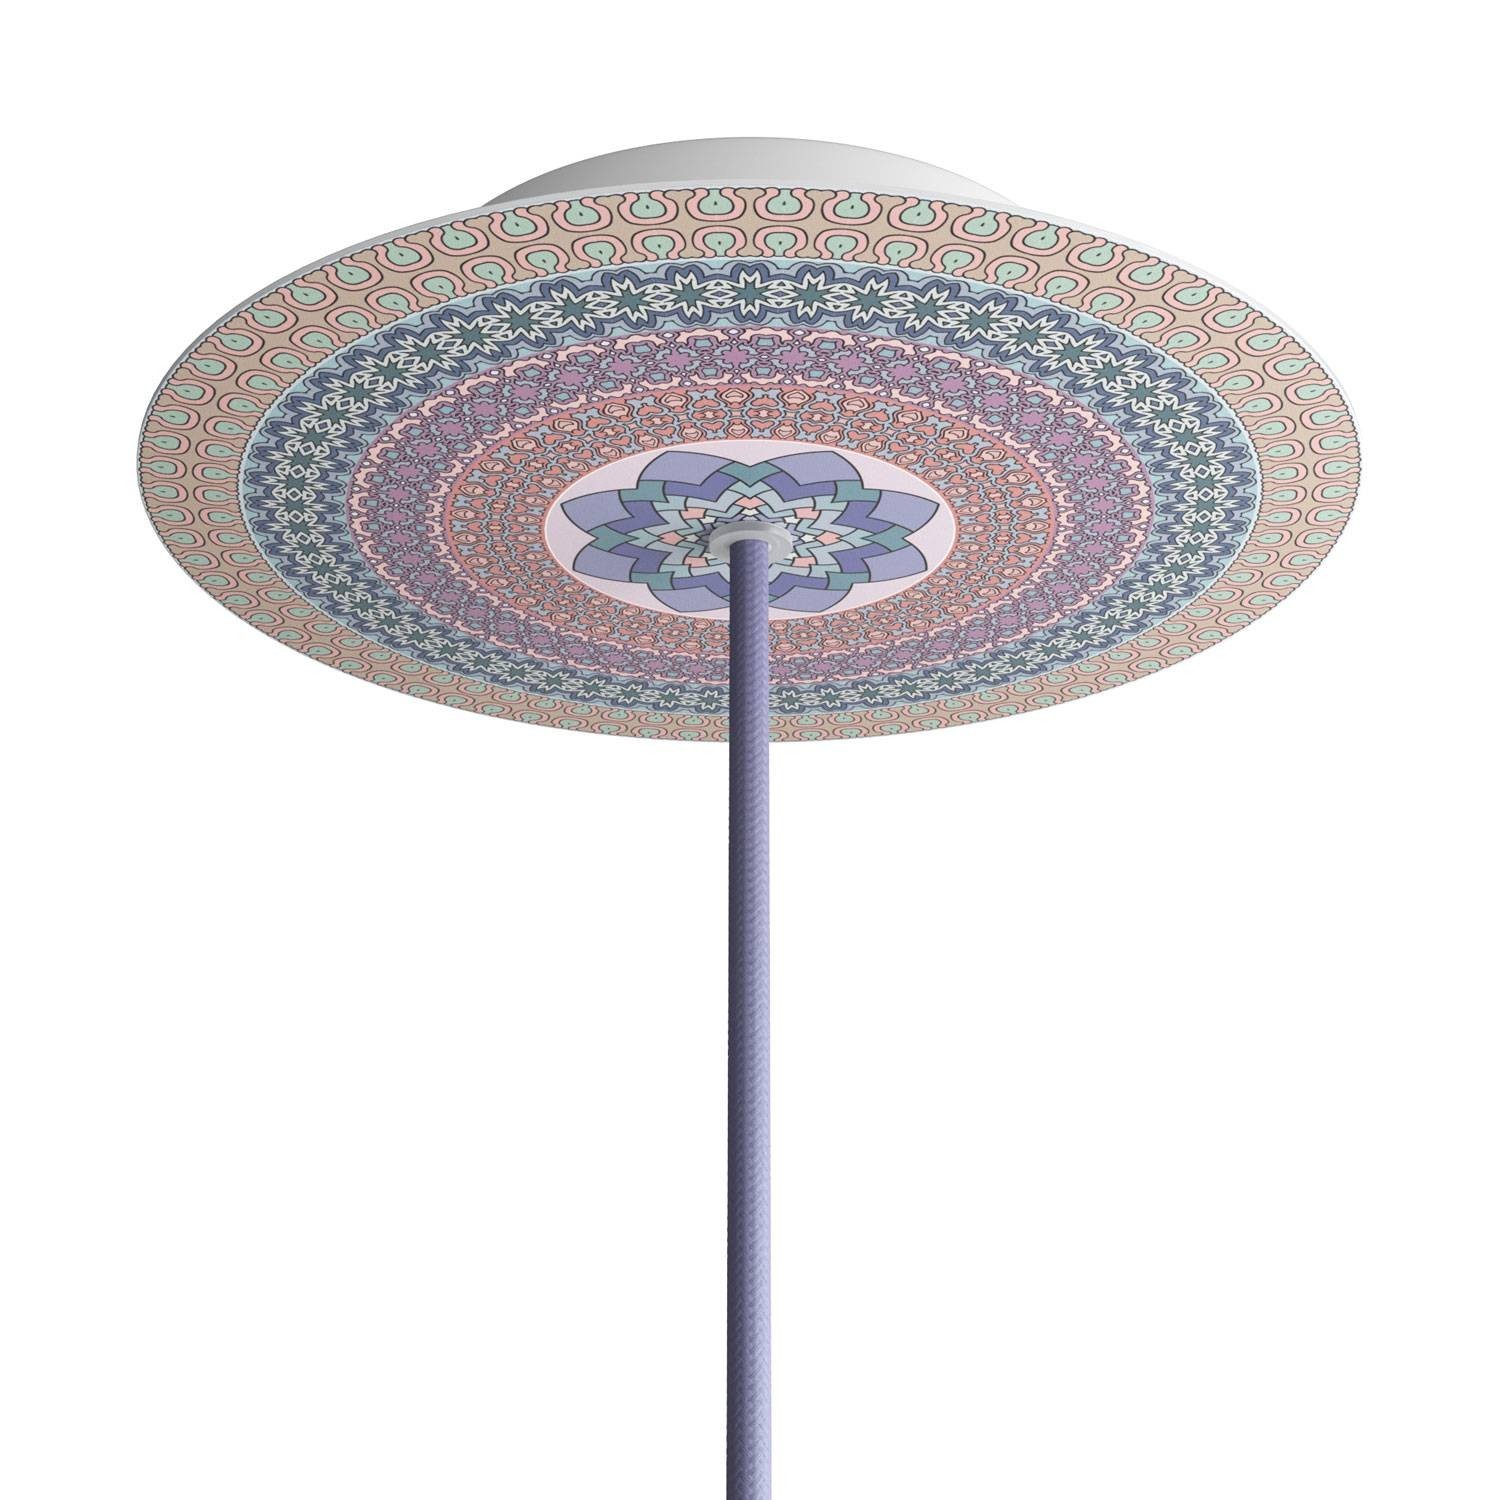 Okrugla stropna dekoracija za rozetu 200 mm - Rose-One sistem s 1 rupom i 4 bočne rupe - PROMO